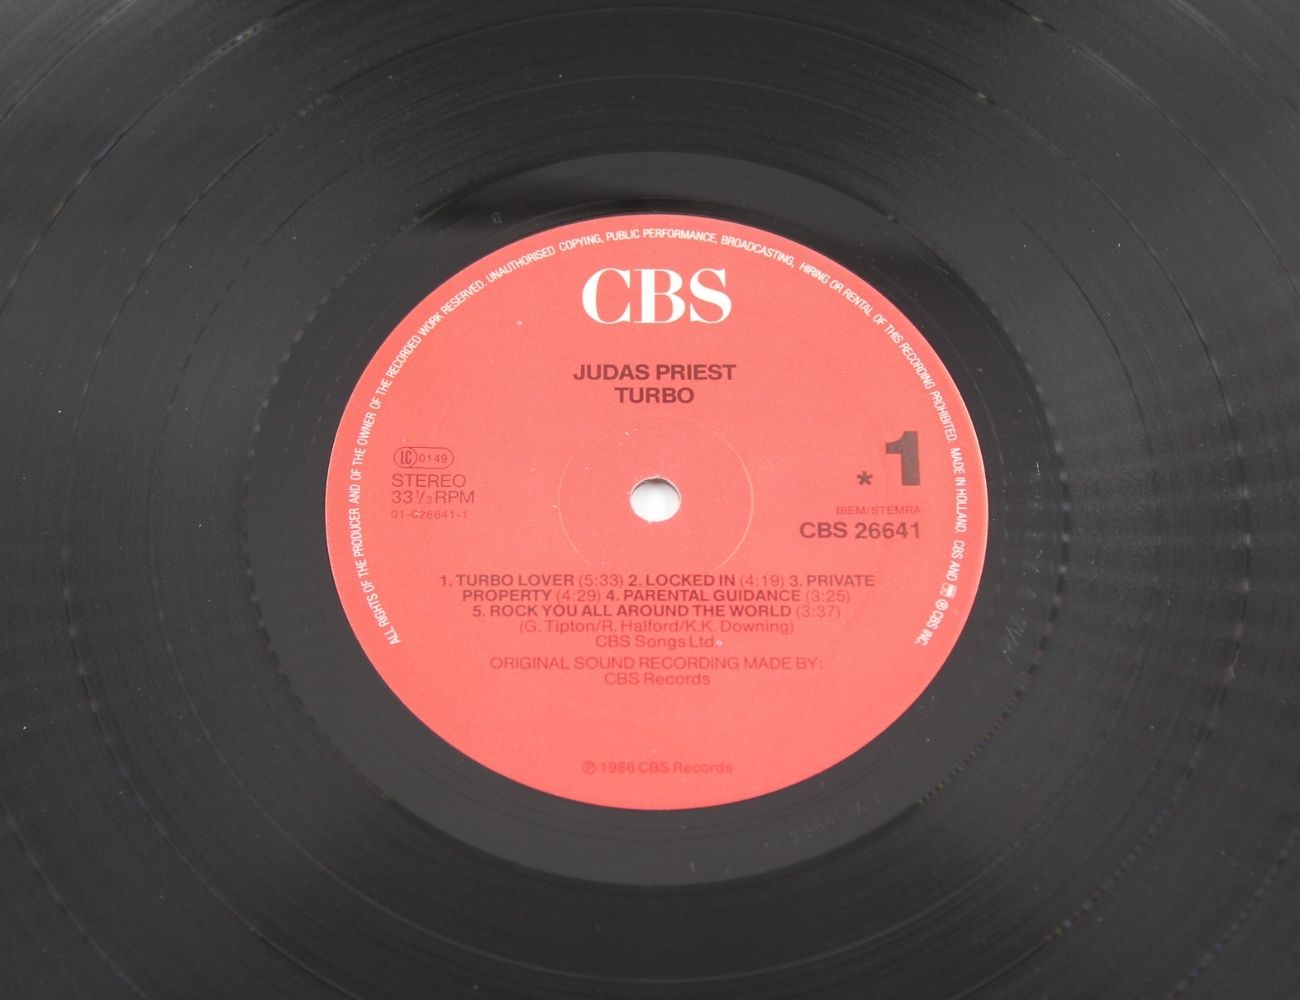 Judas Priest - Turbo - CBS - CBS 26641